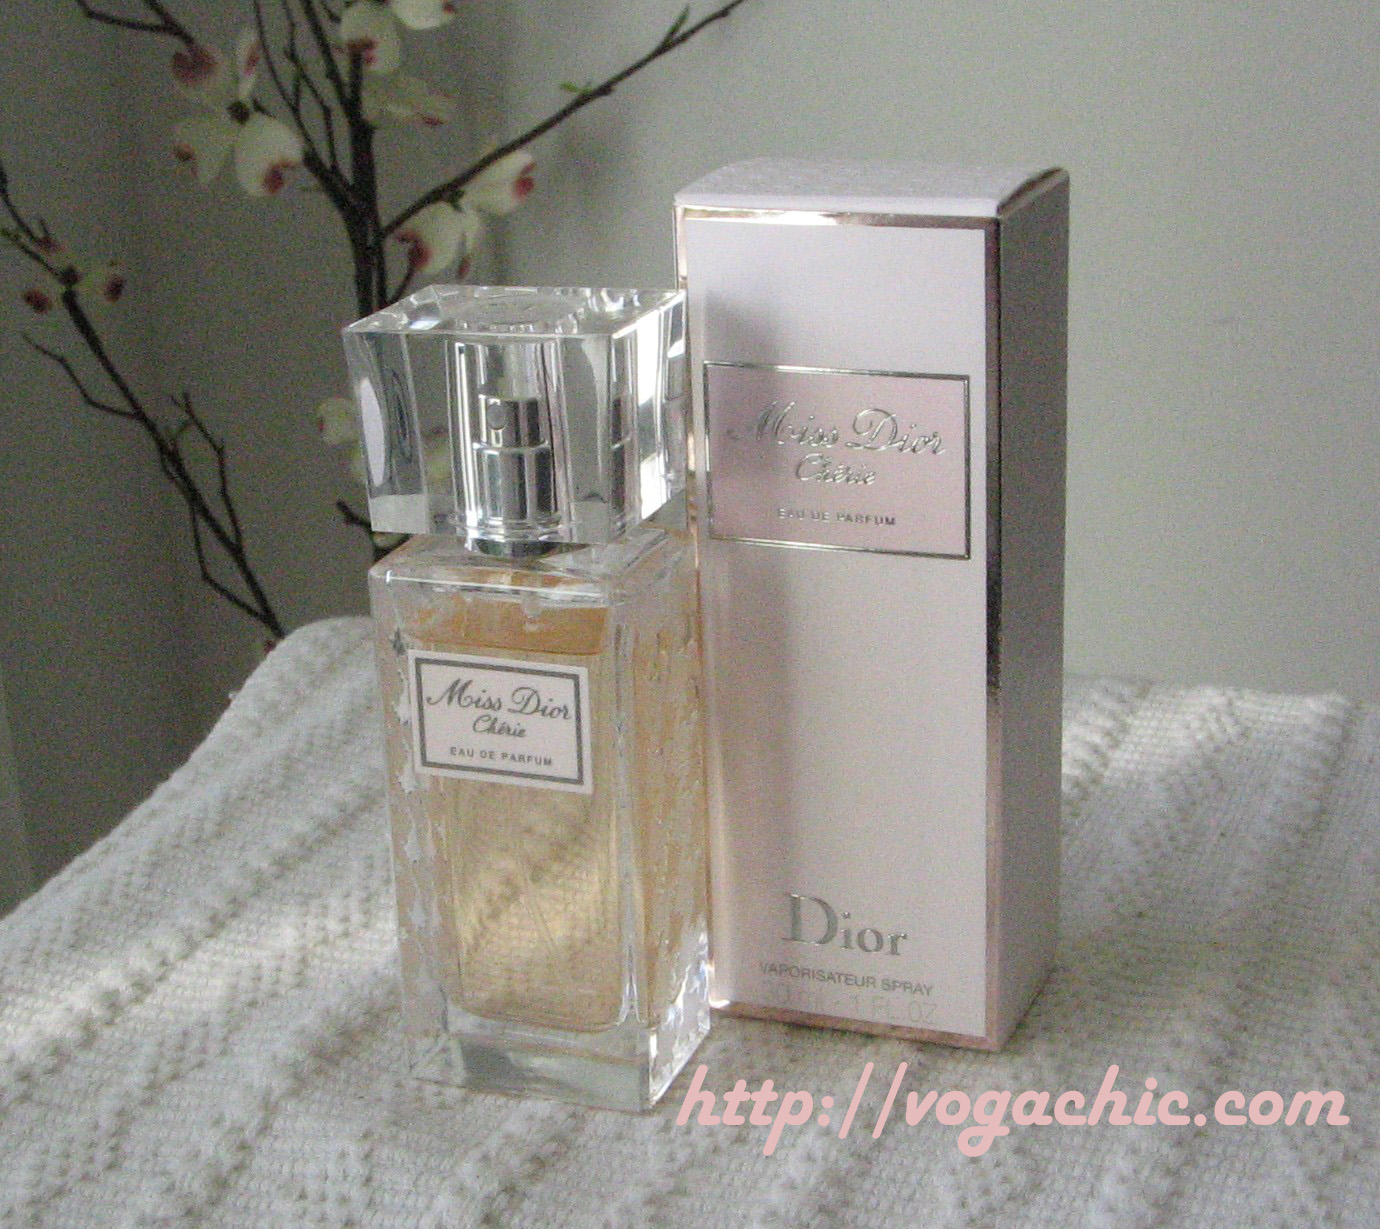 http://1.bp.blogspot.com/__TSpS88eKOE/TTYqxei6YkI/AAAAAAAAC-Q/O9AdQVWq_ao/s1600/Miss+Dior+Ch%25C3%25A9rie+Dior+copia.jpg